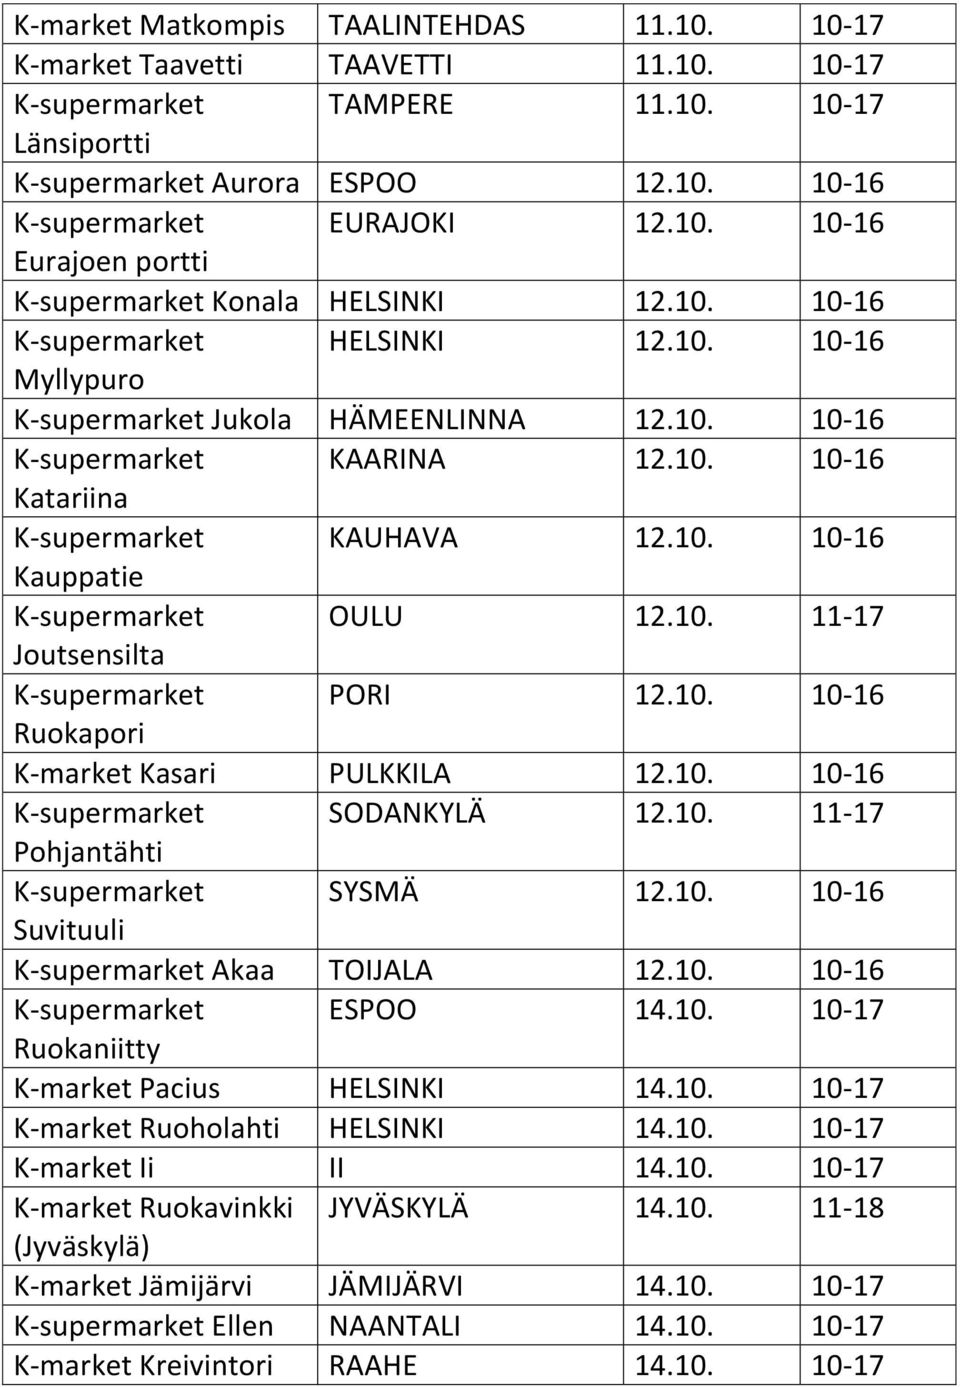 10. 10-16 Kauppatie K-supermarket OULU 12.10. 11-17 Joutsensilta K-supermarket PORI 12.10. 10-16 Ruokapori K-market Kasari PULKKILA 12.10. 10-16 K-supermarket SODANKYLÄ 12.10. 11-17 Pohjantähti K-supermarket SYSMÄ 12.